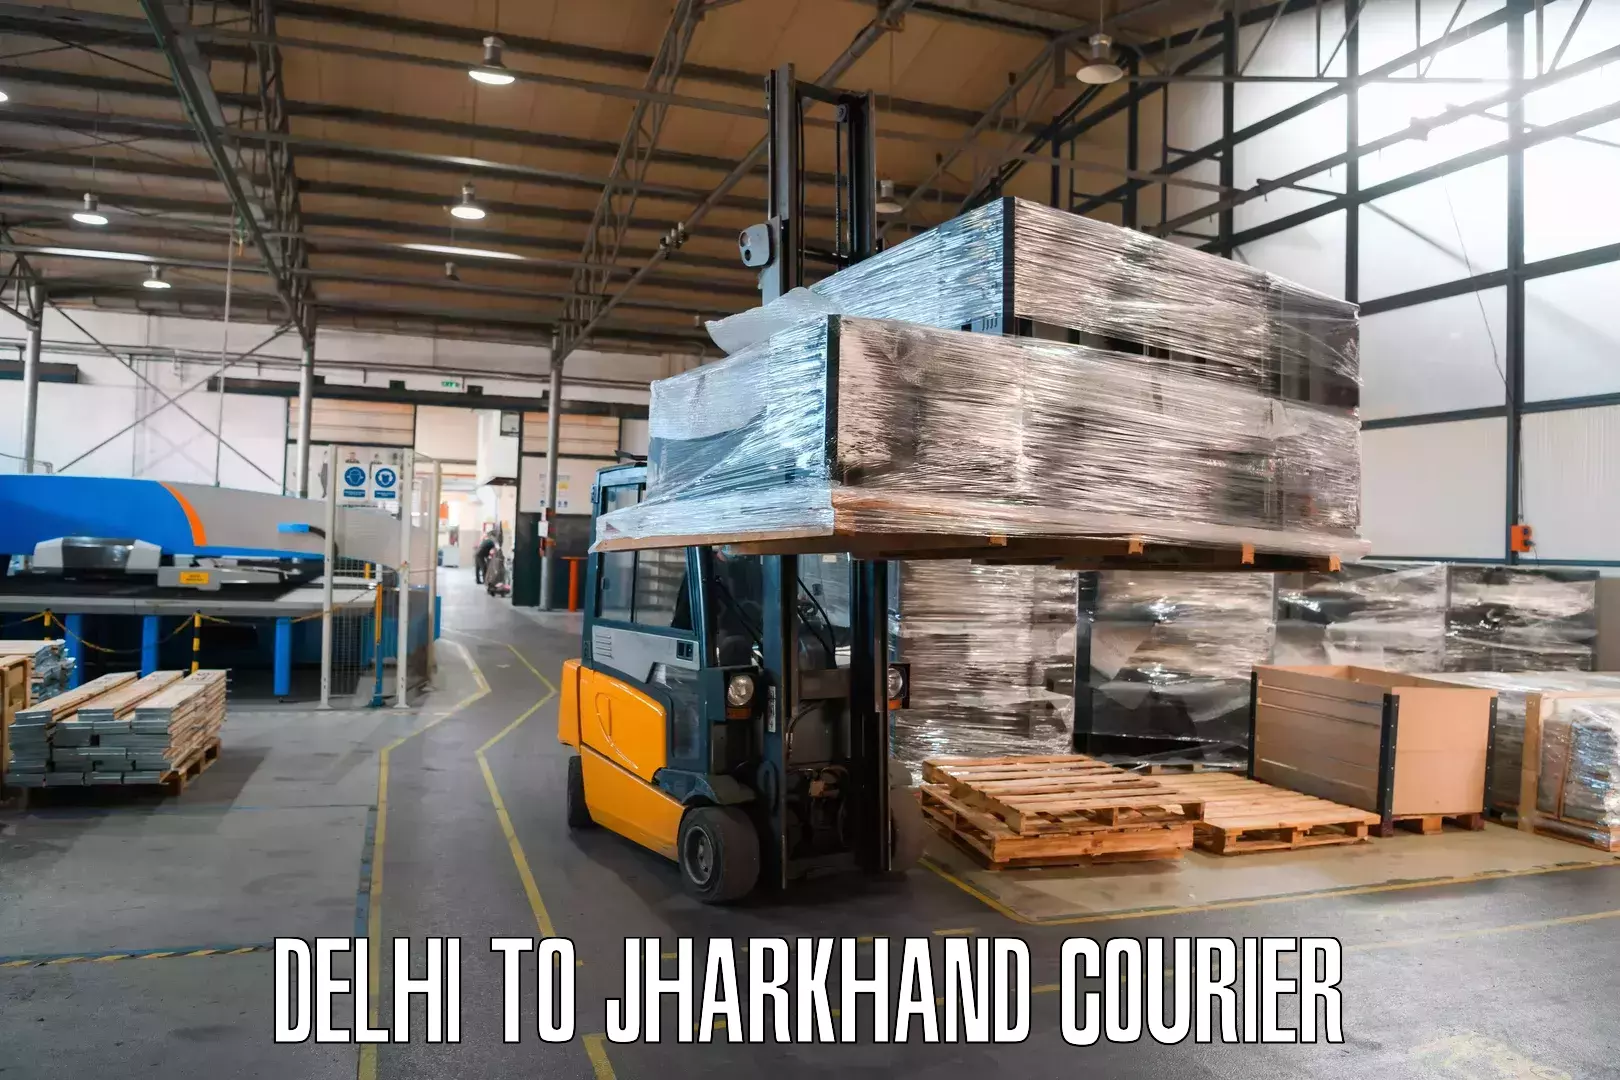 User-friendly delivery service Delhi to Musabani